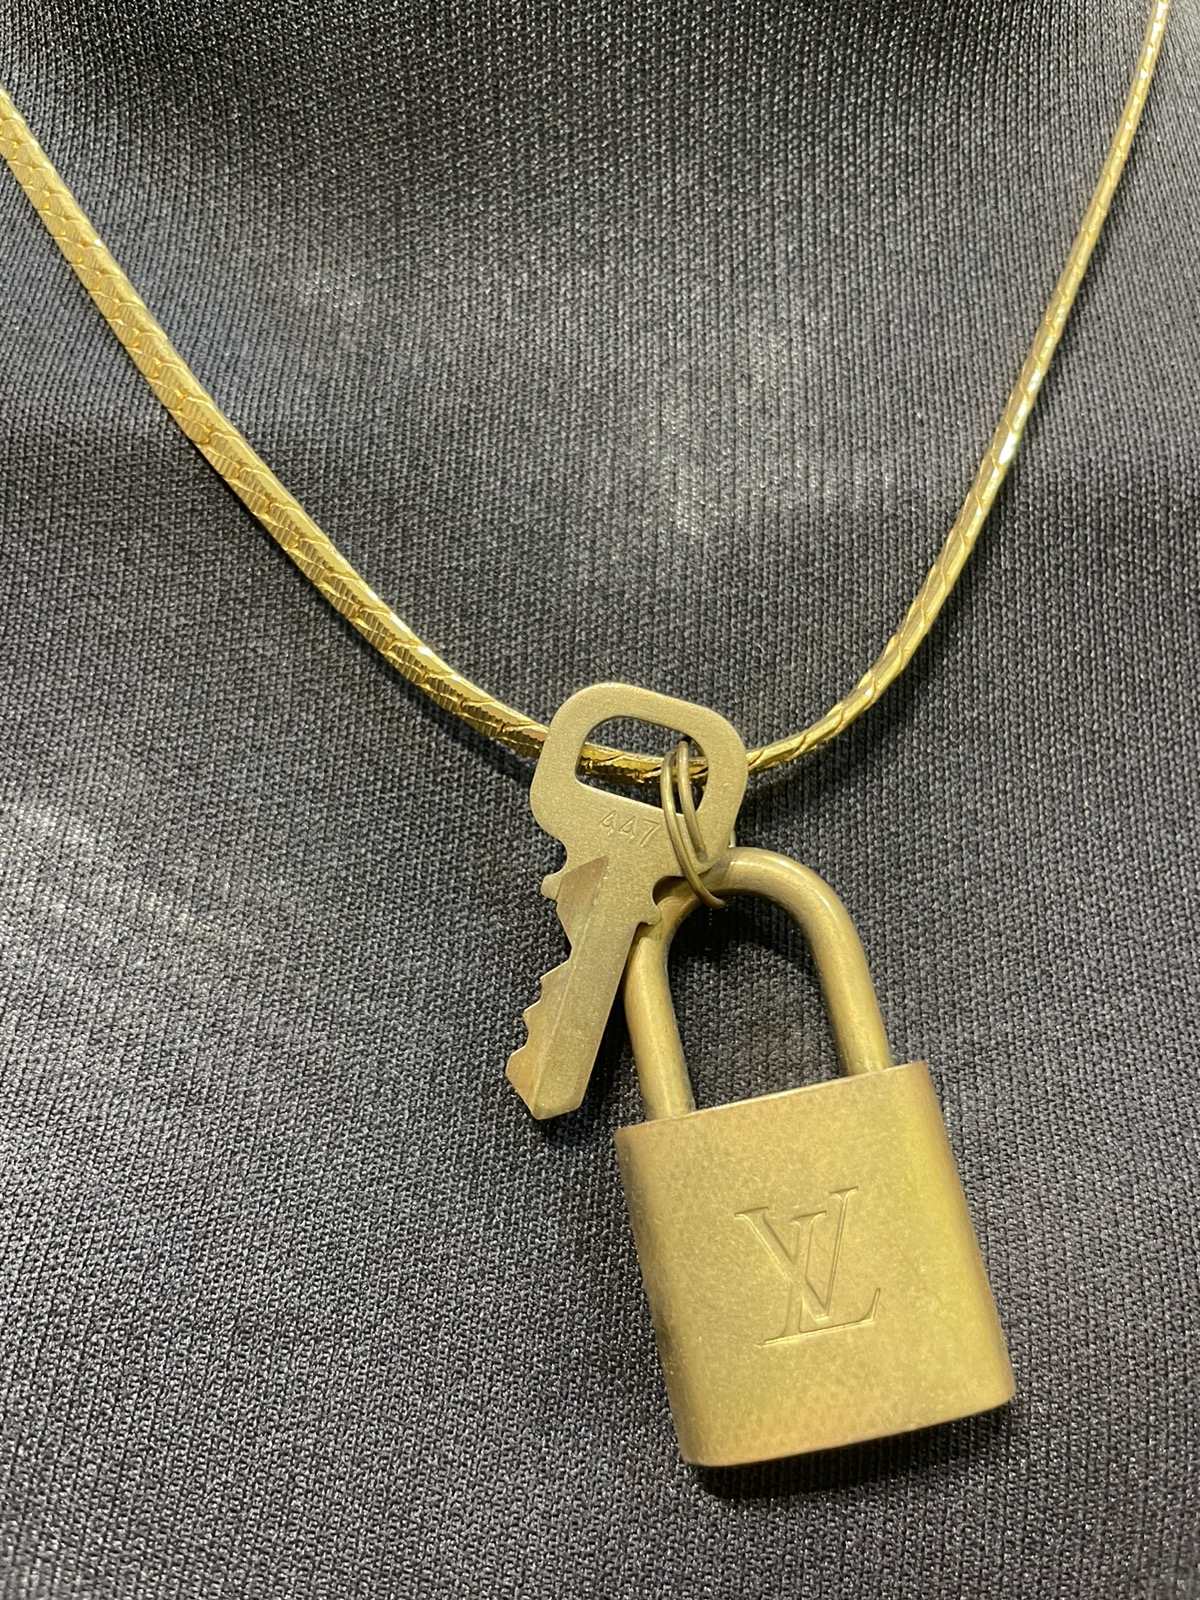 Louis Vuitton /key / Gold Necklace - 5